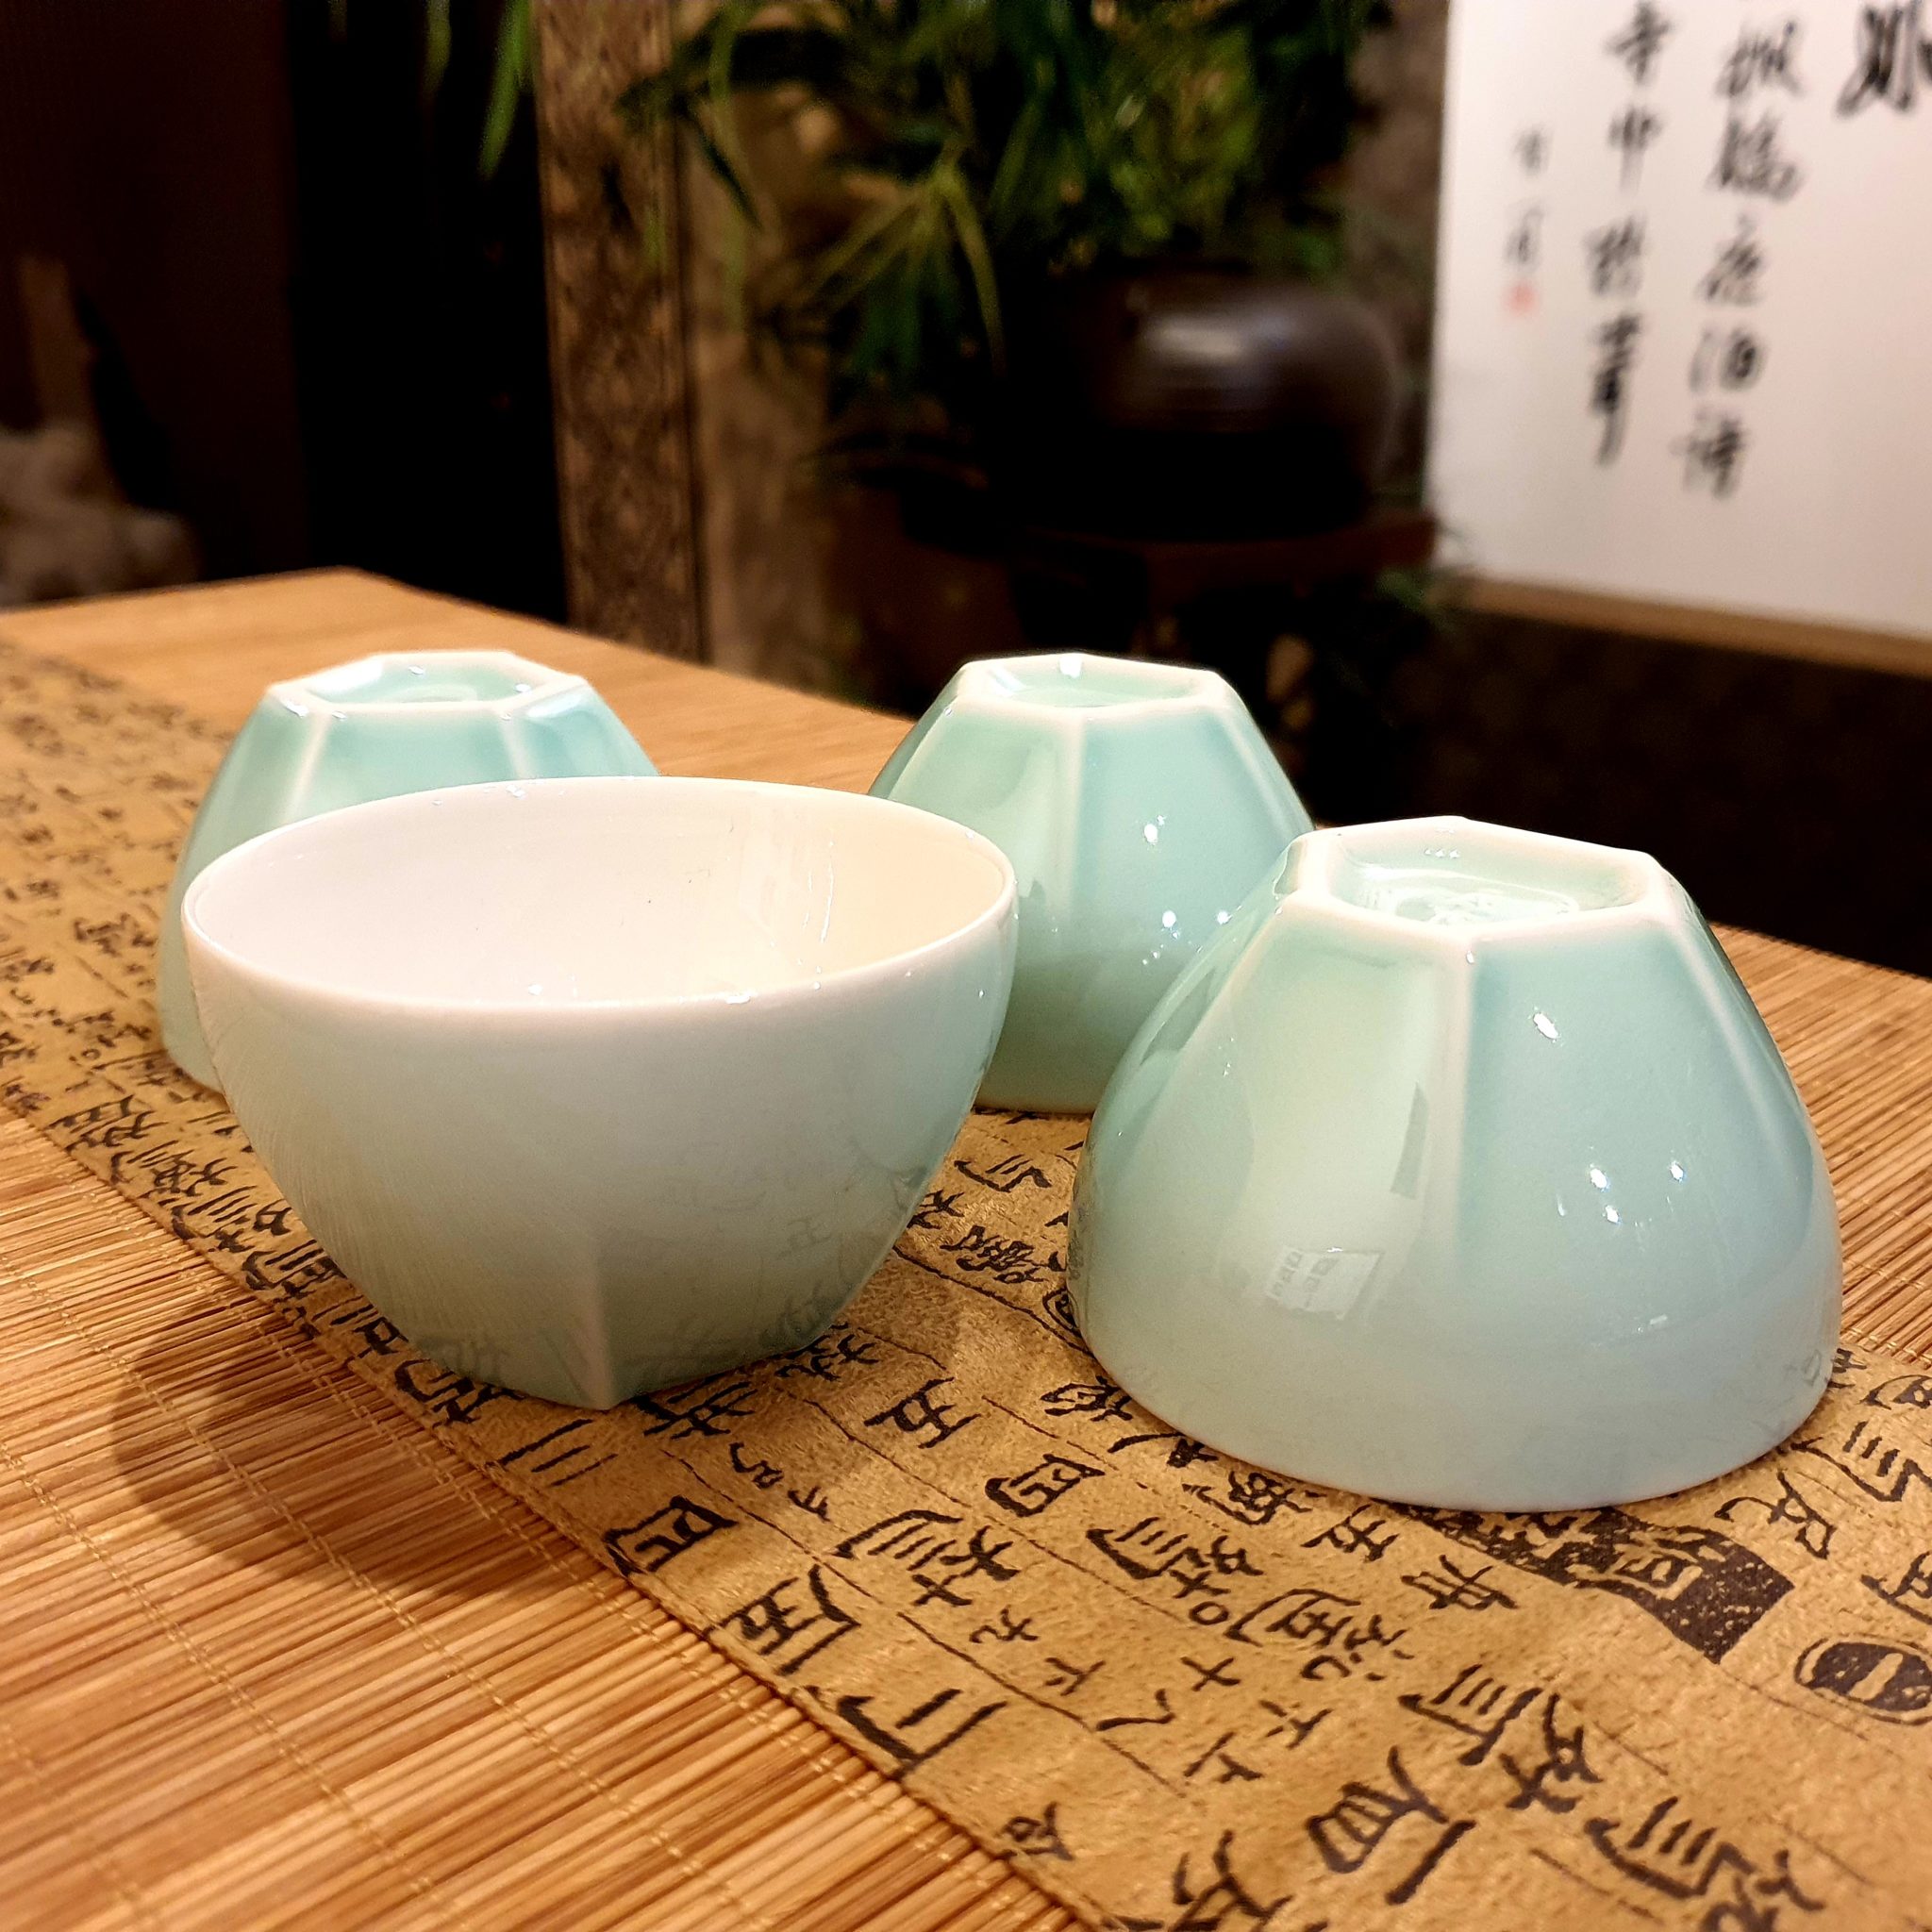 青磁茶器6点セット | 福岡 北九州市 本格中国茶・台湾茶・世界の茶専門店 凰茶堂オンラインショップ